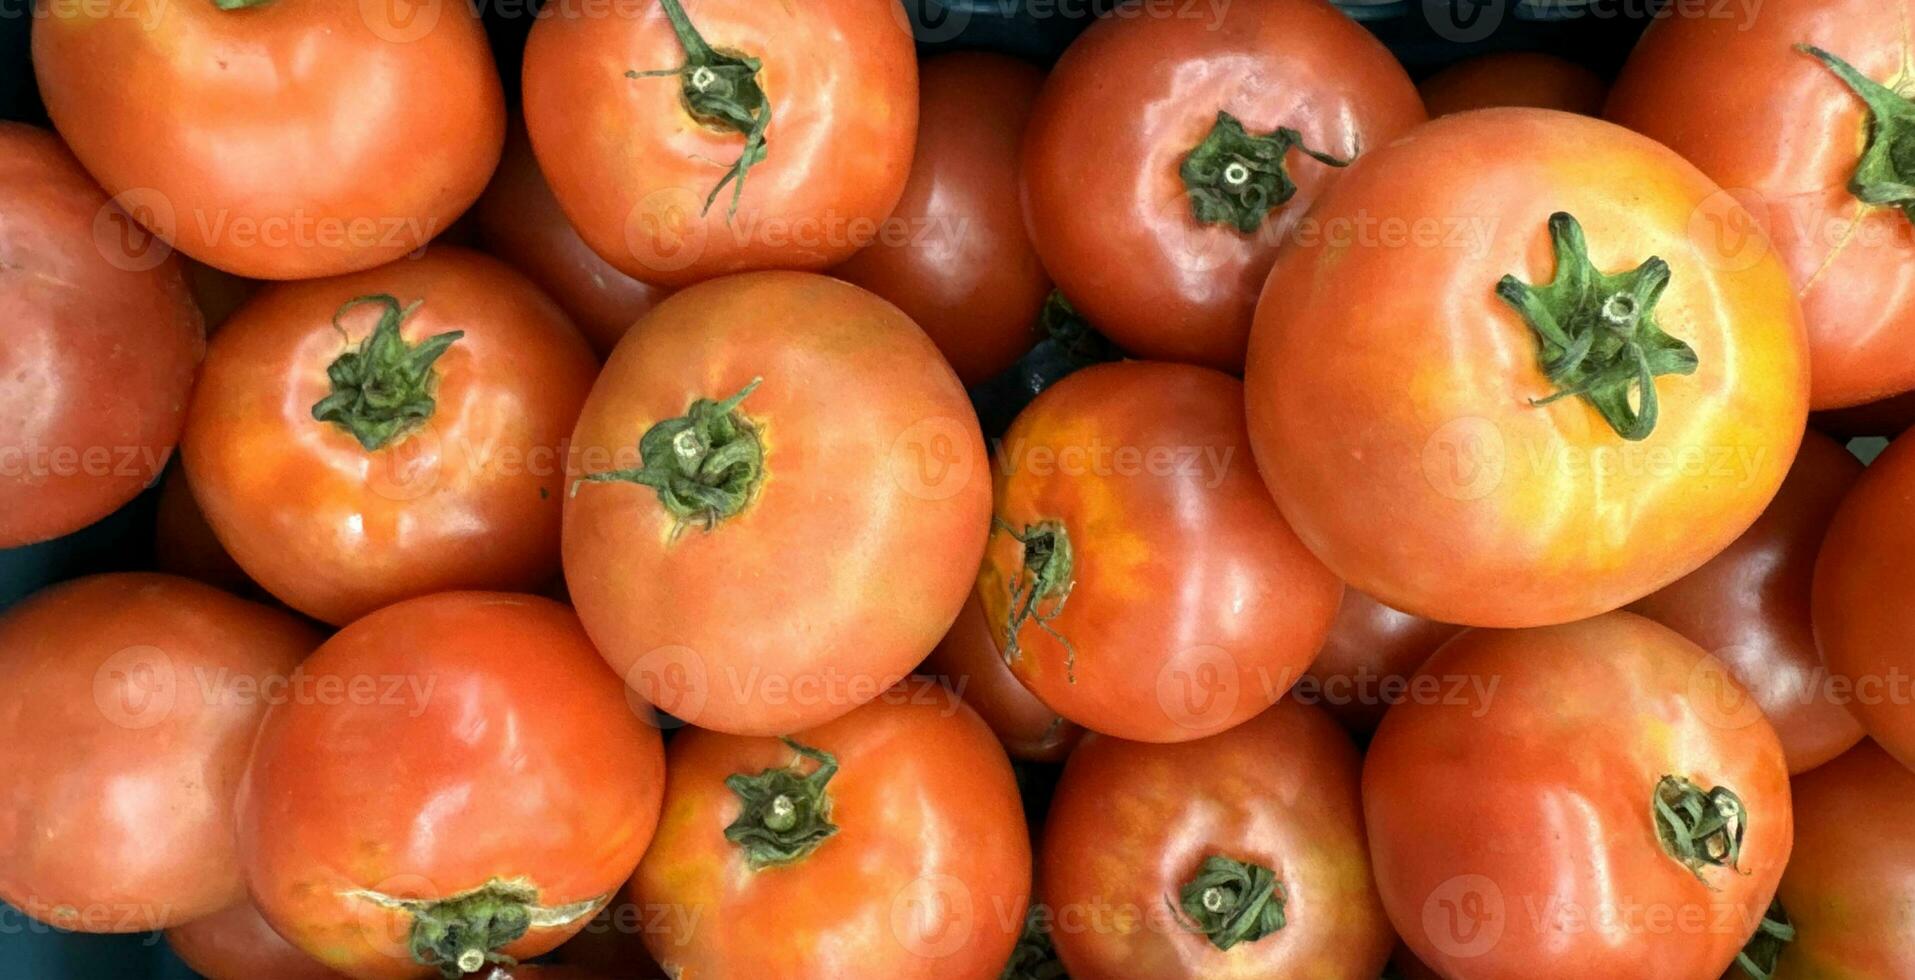 groupe de tomates mensonge sur une pile sur Haut de chaque autre, tomate texture. sélectif se concentrer, pour contenu création photo